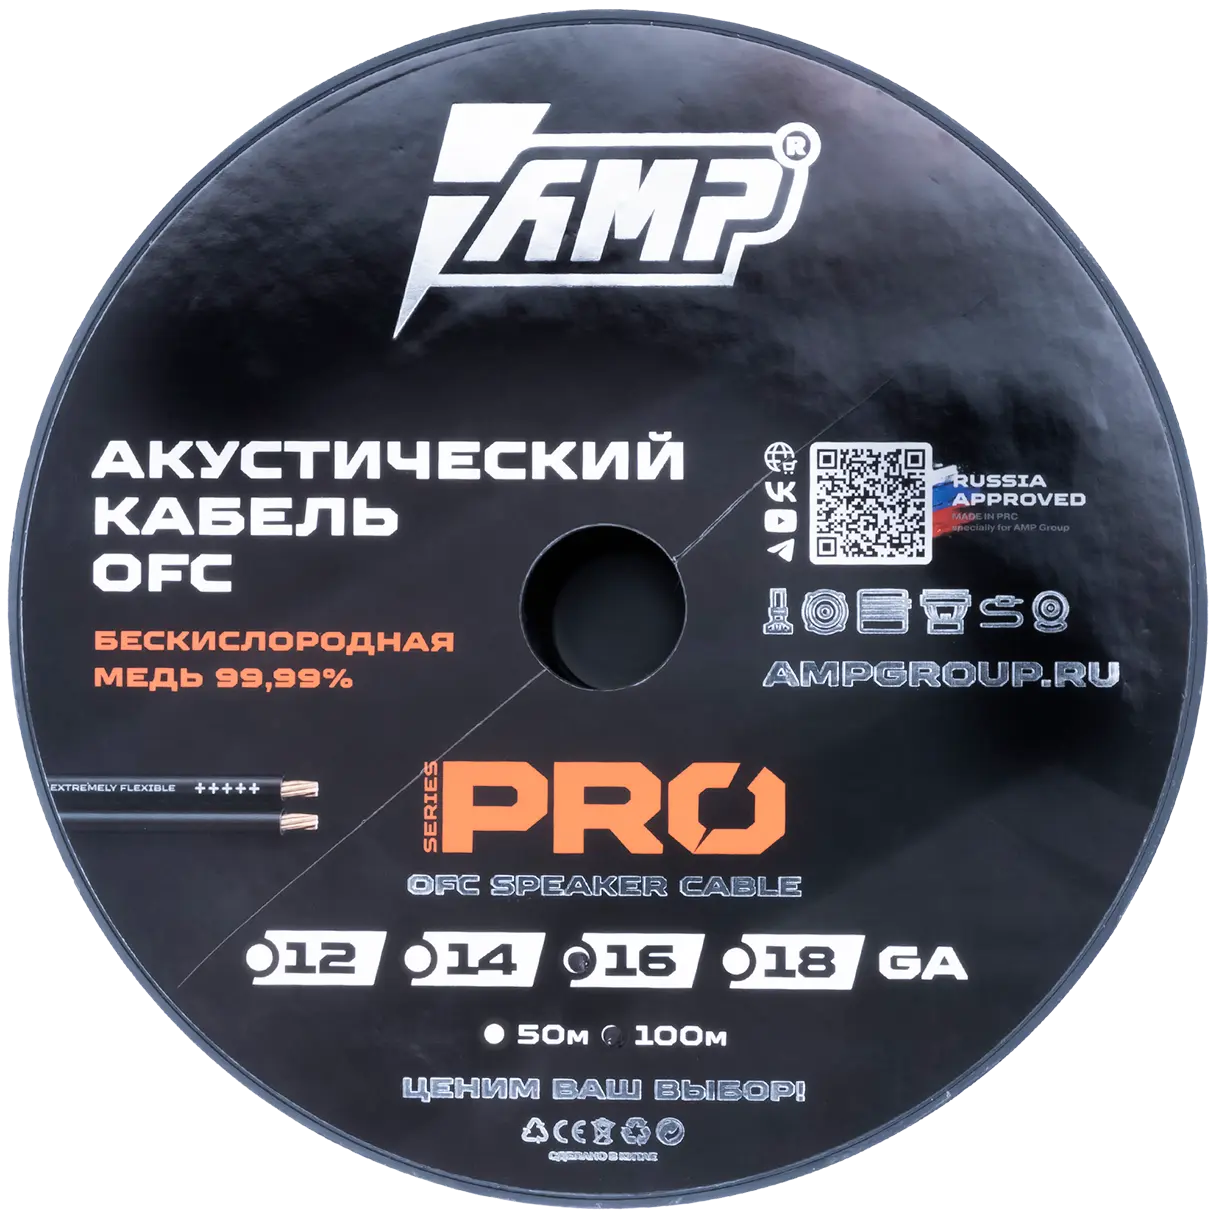 Провод акустический AMP PRO 16Ga OFC Extremely flexible медь 100% купить в интернет магазине AMPGROUP.  Провод акустический AMP PRO 16Ga OFC Extremely flexible медь 100%   цены, большой каталог, новинки.
